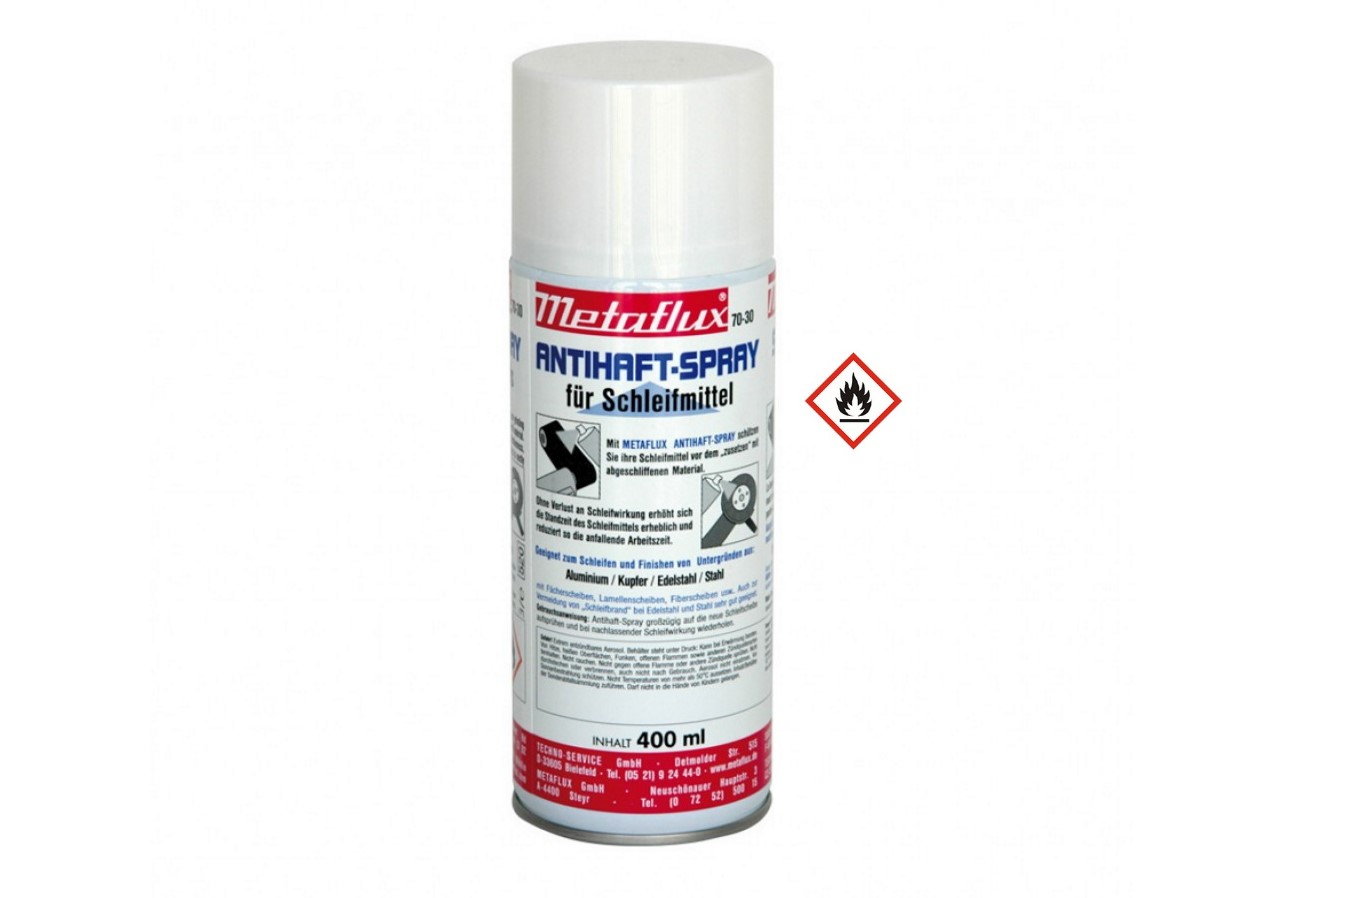 Antihaft-Spray 400ml Metaflux | 70-3000 - 1